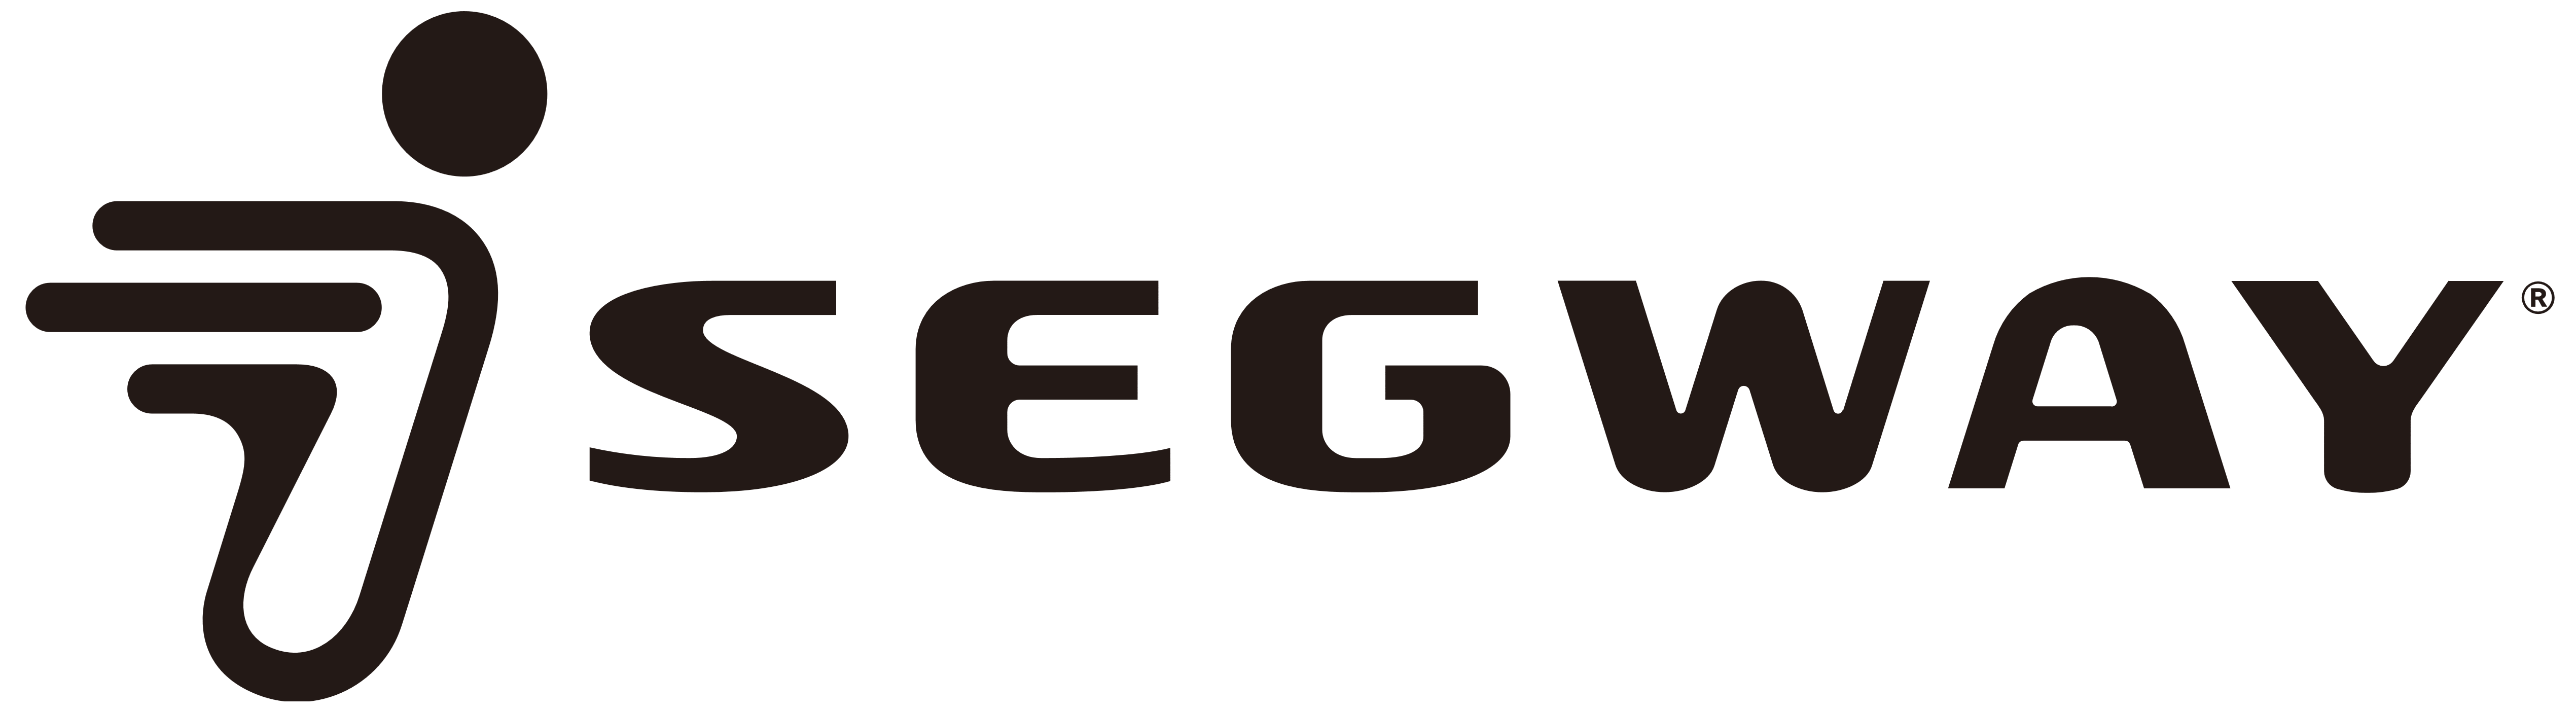 Segway – Logos Download